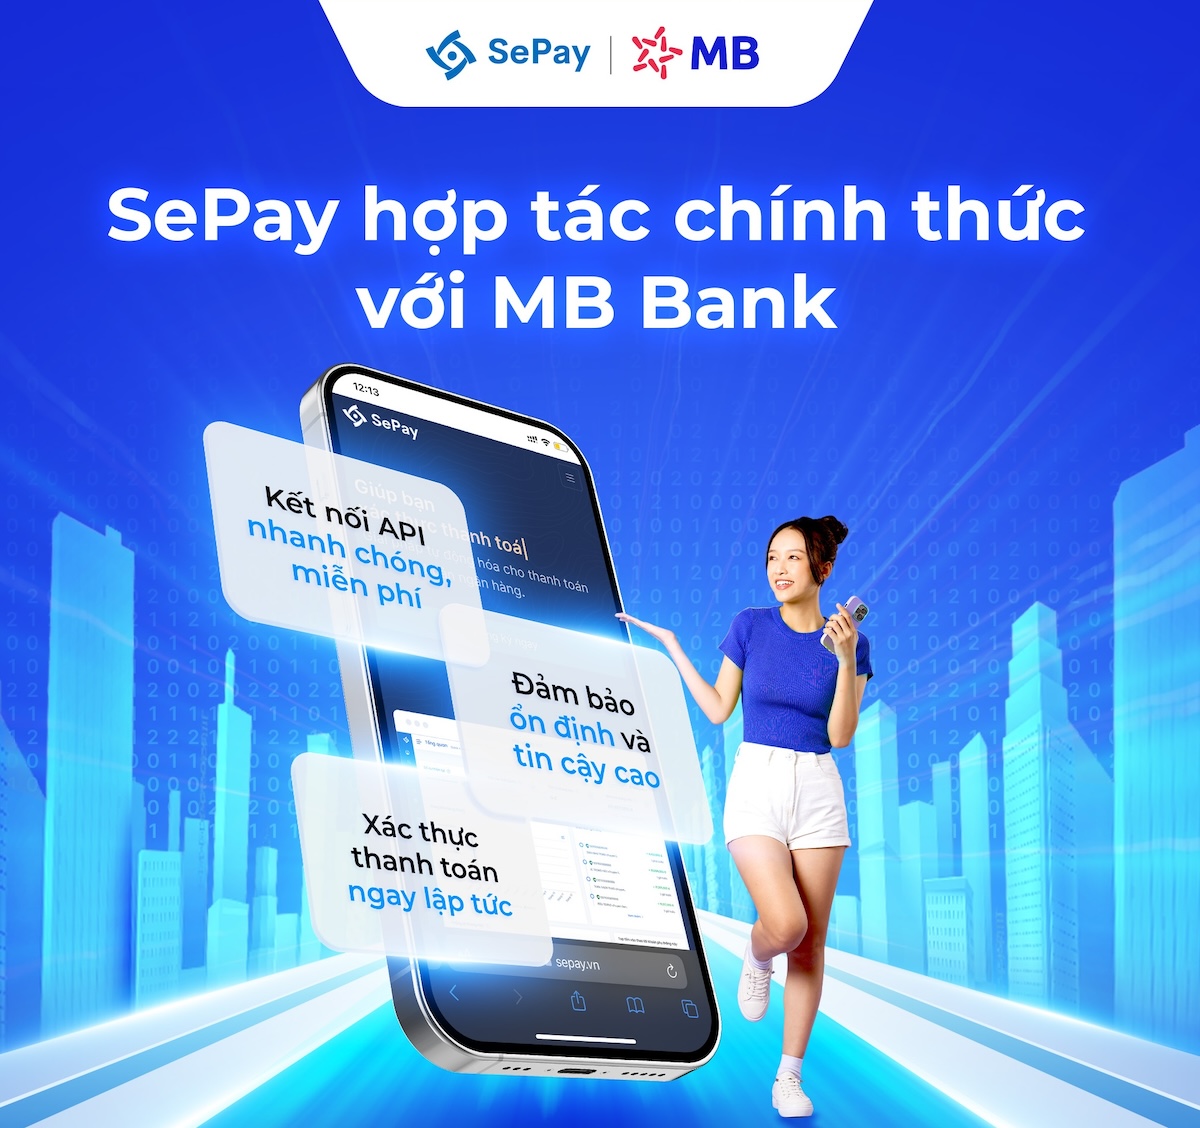 SePay hợp tác chính thức với MB Bank